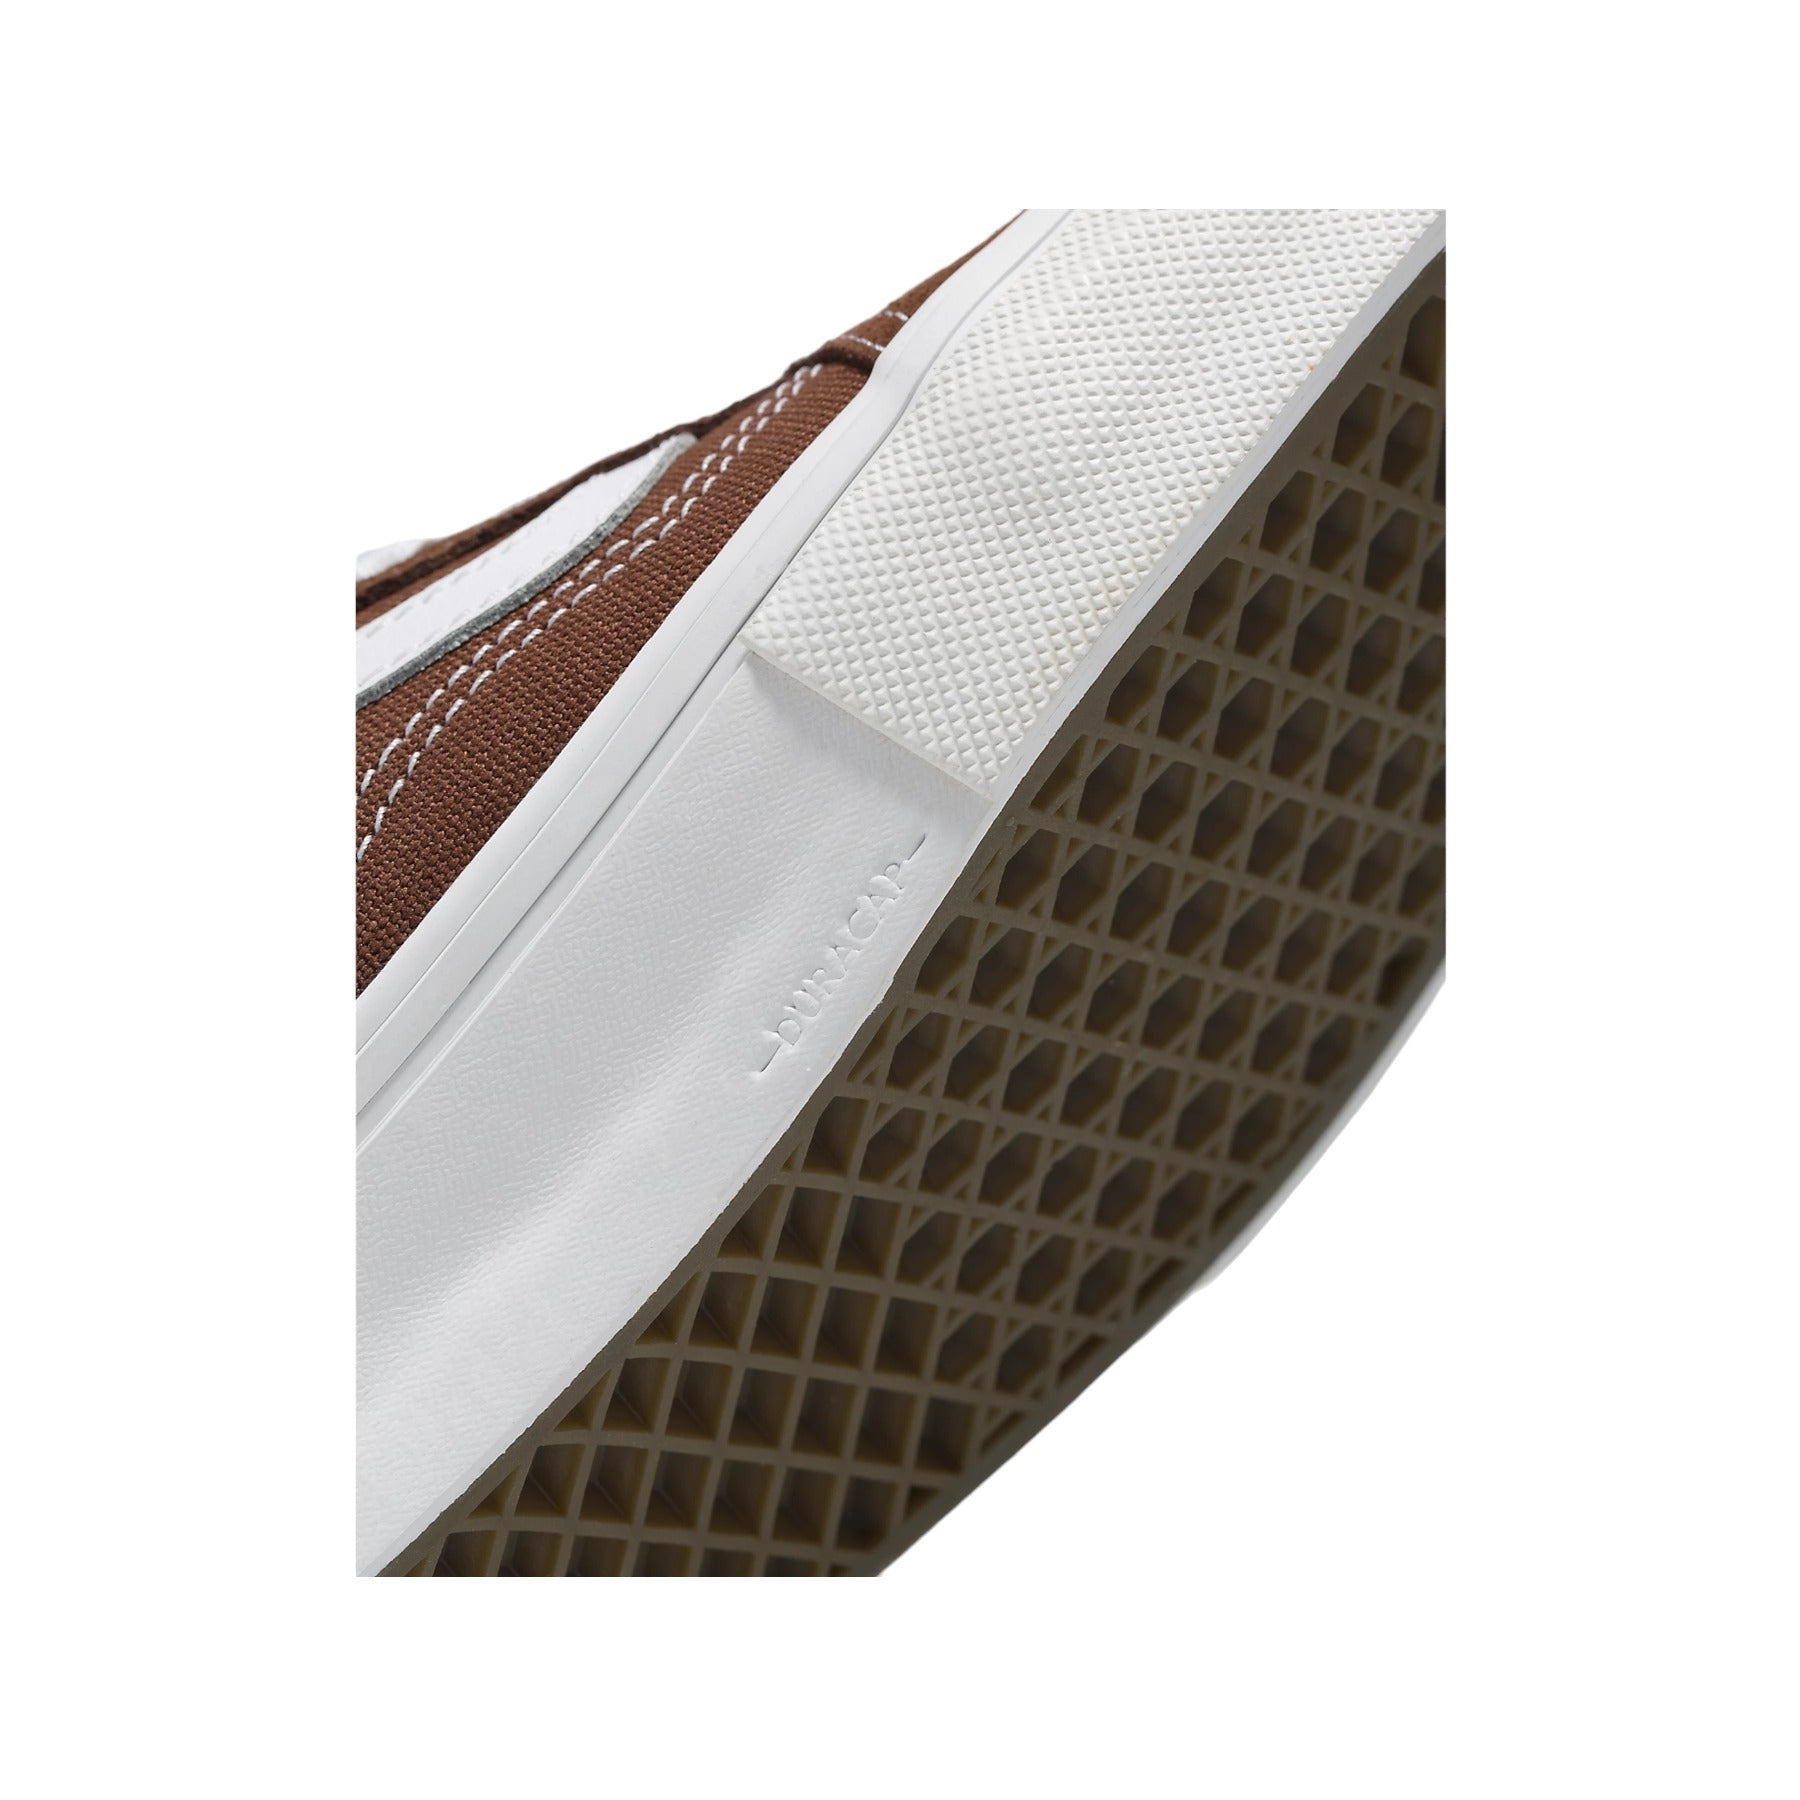 Vans Skate Old Skool Shoes (Nick Michel) - Brown/White